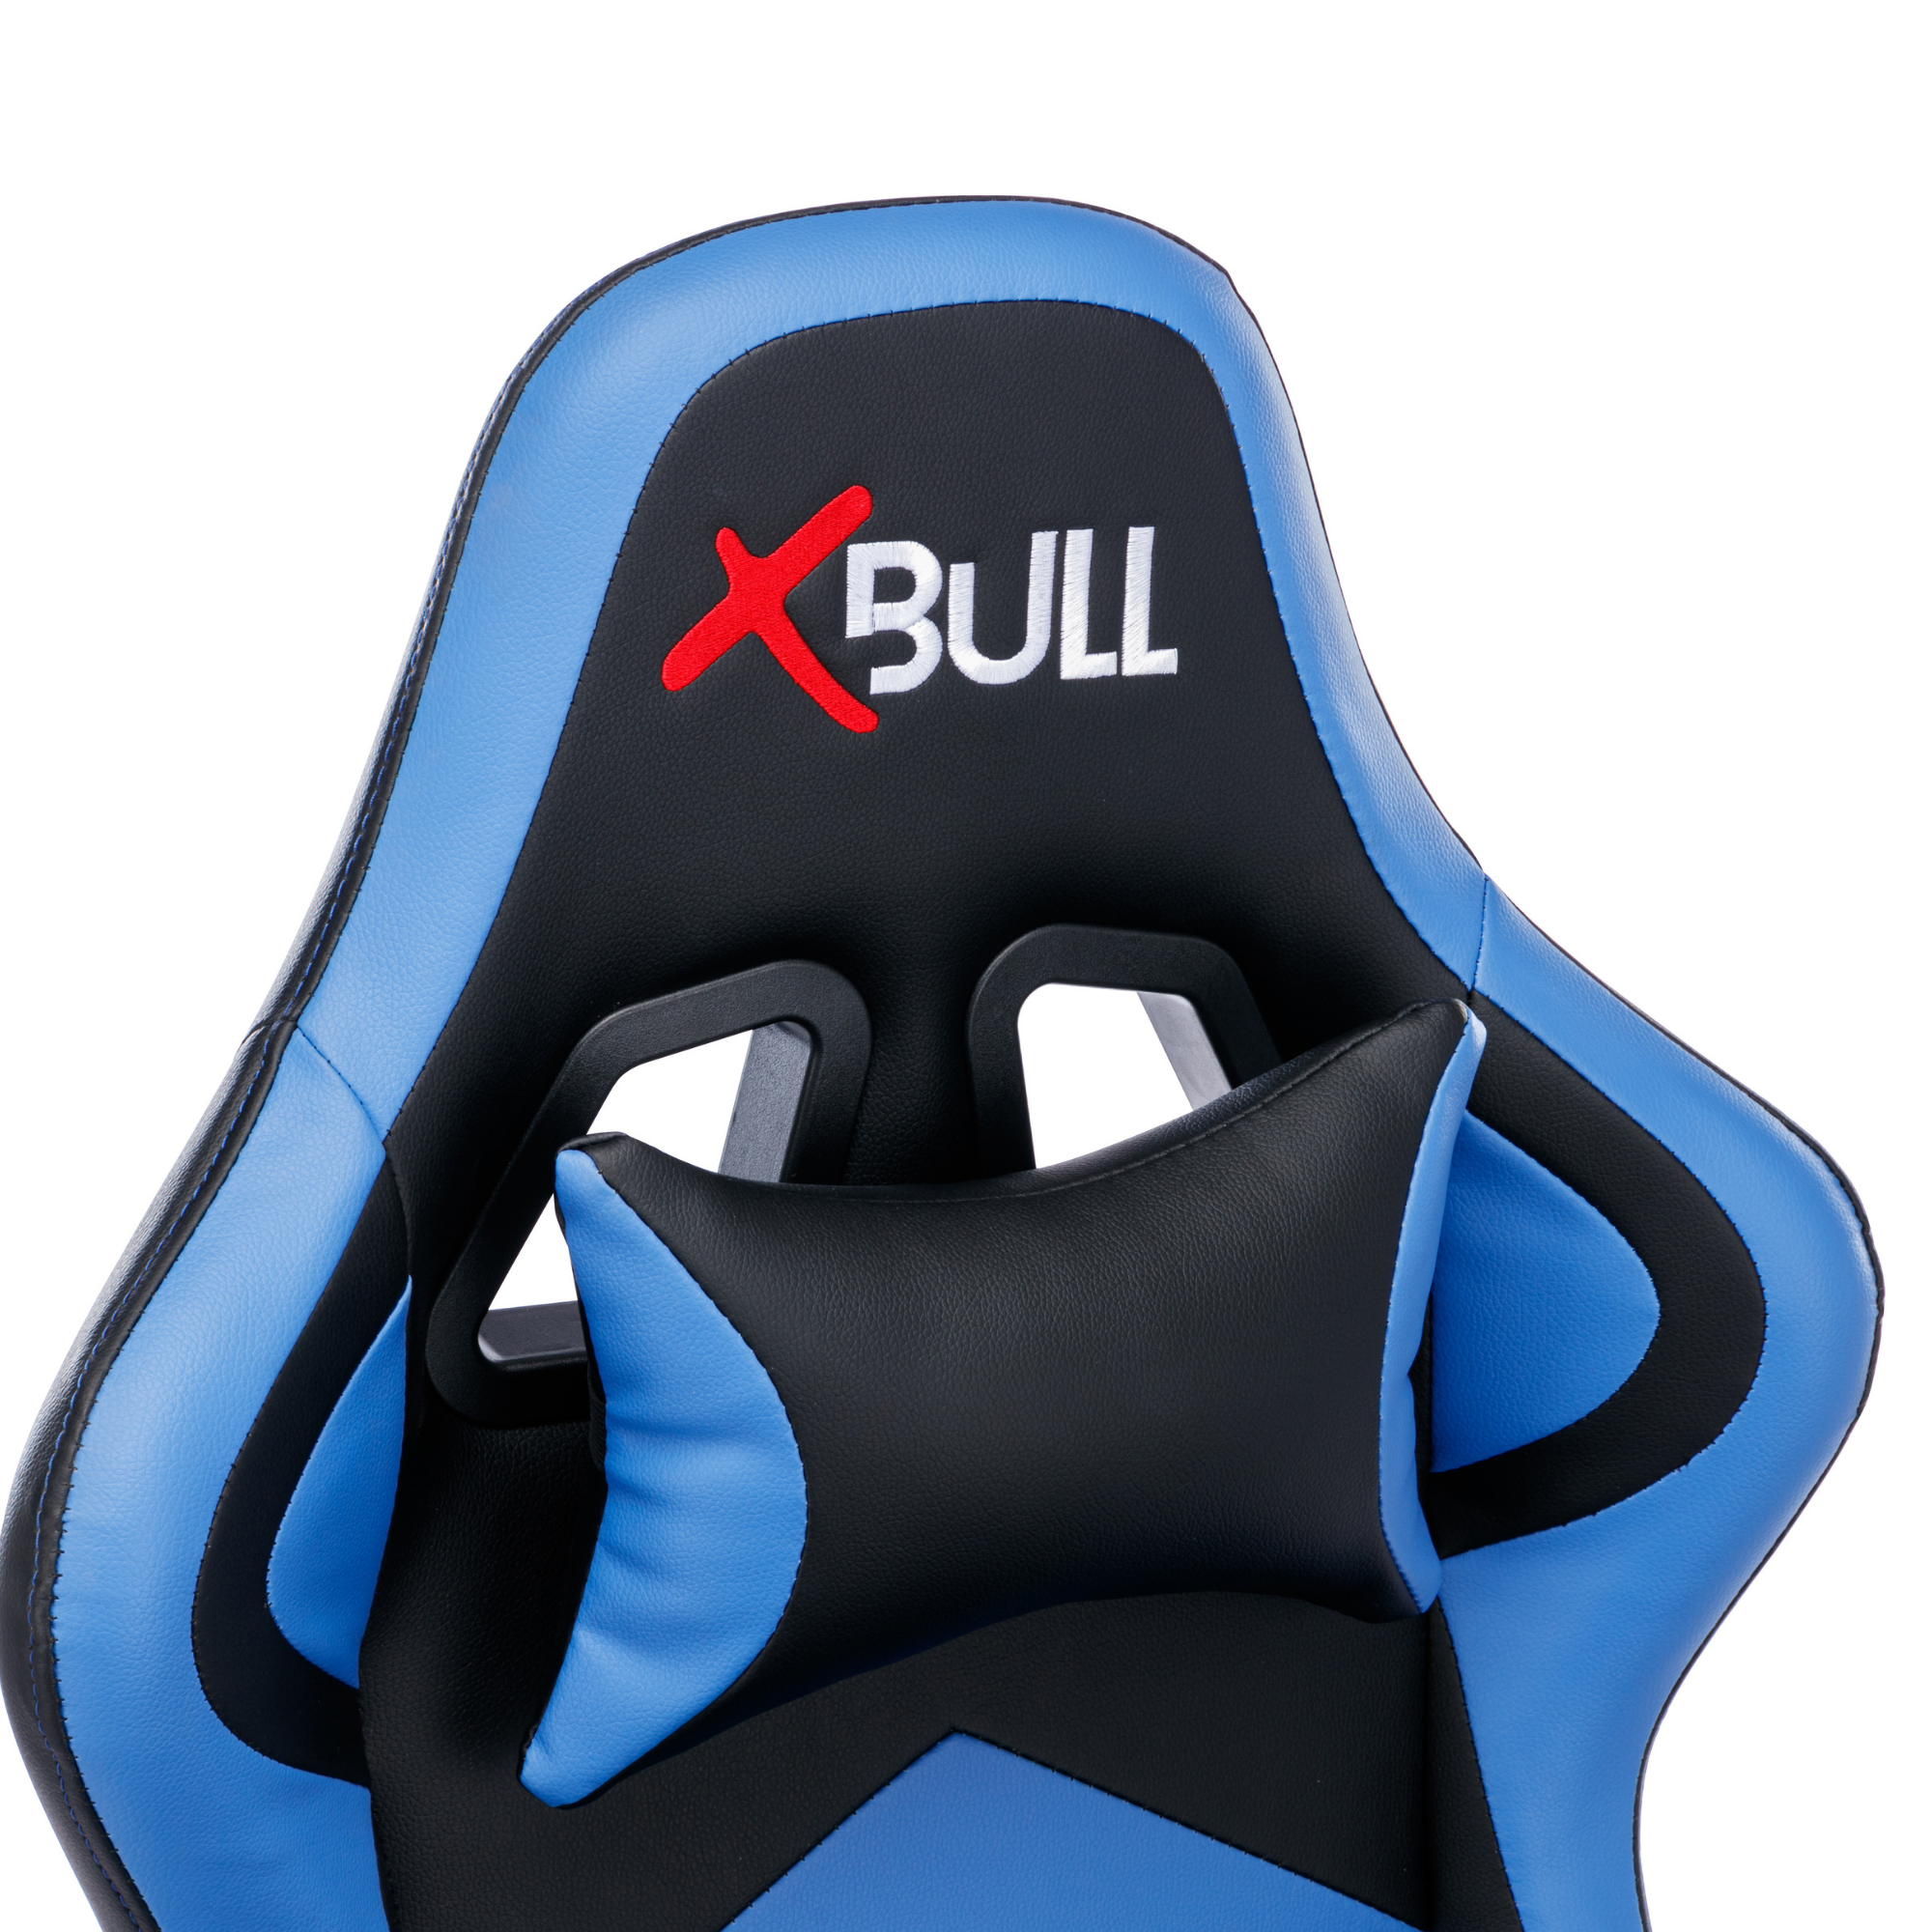 X-Bull Sedia Gaming XL con Poggiapiedi Ergonomica da Ufficio